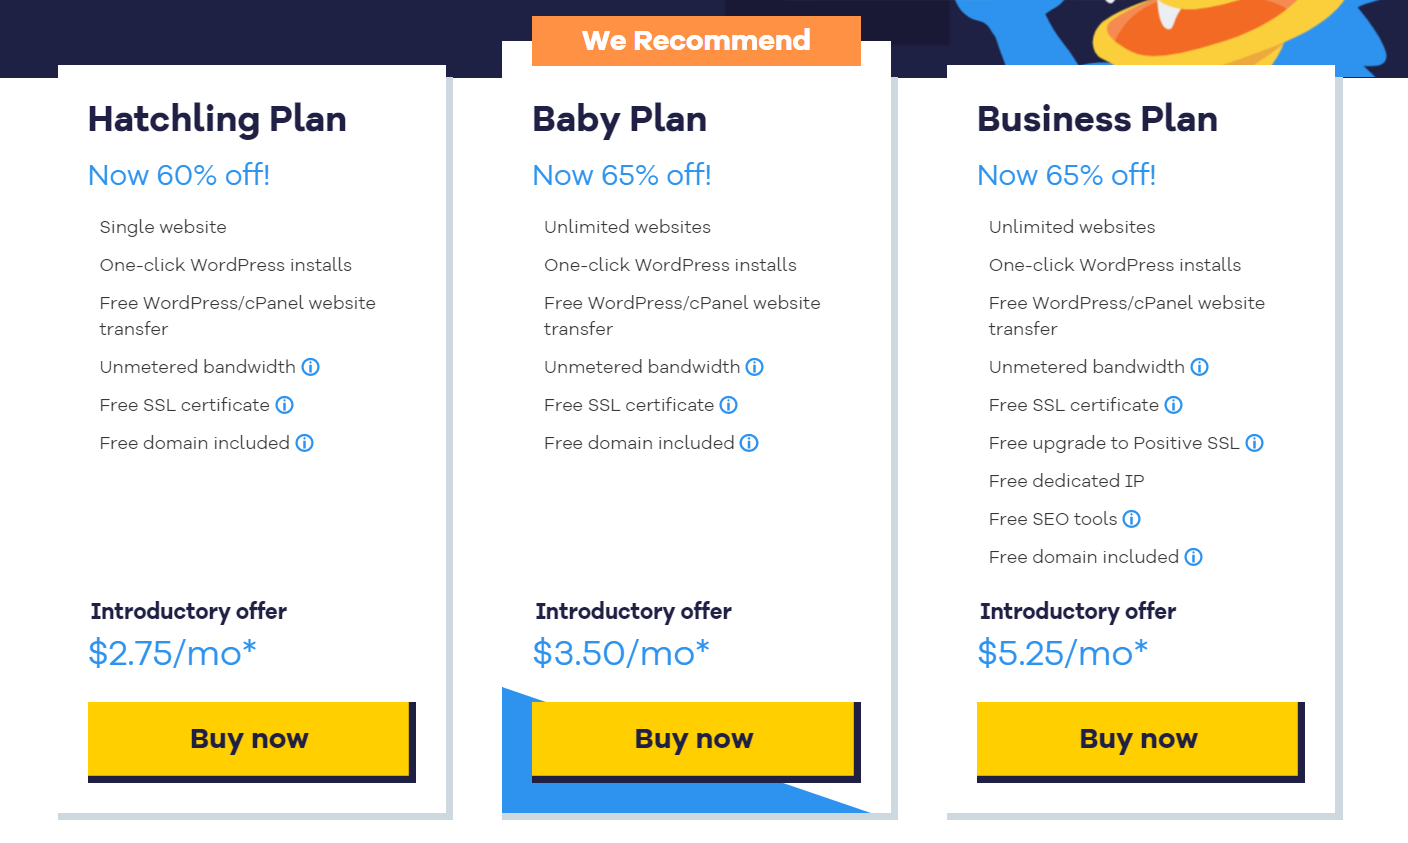 HostGator price 3 Baby Plan, Business Plan